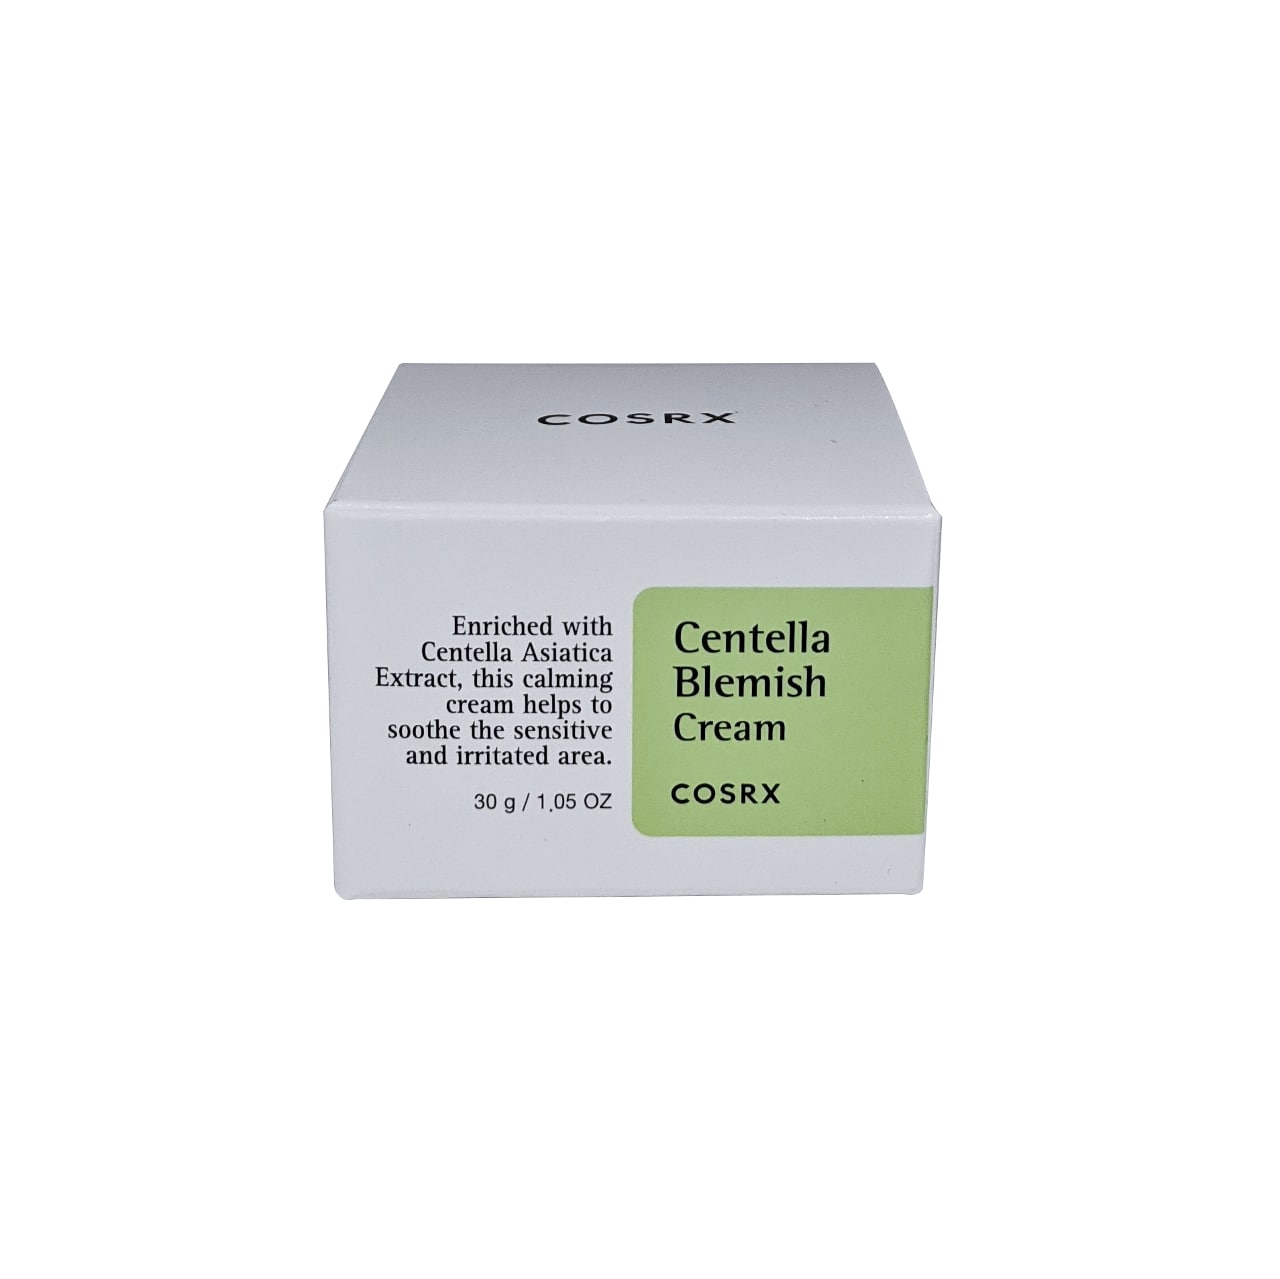 Product label for COSRX Centella Blemish Cream